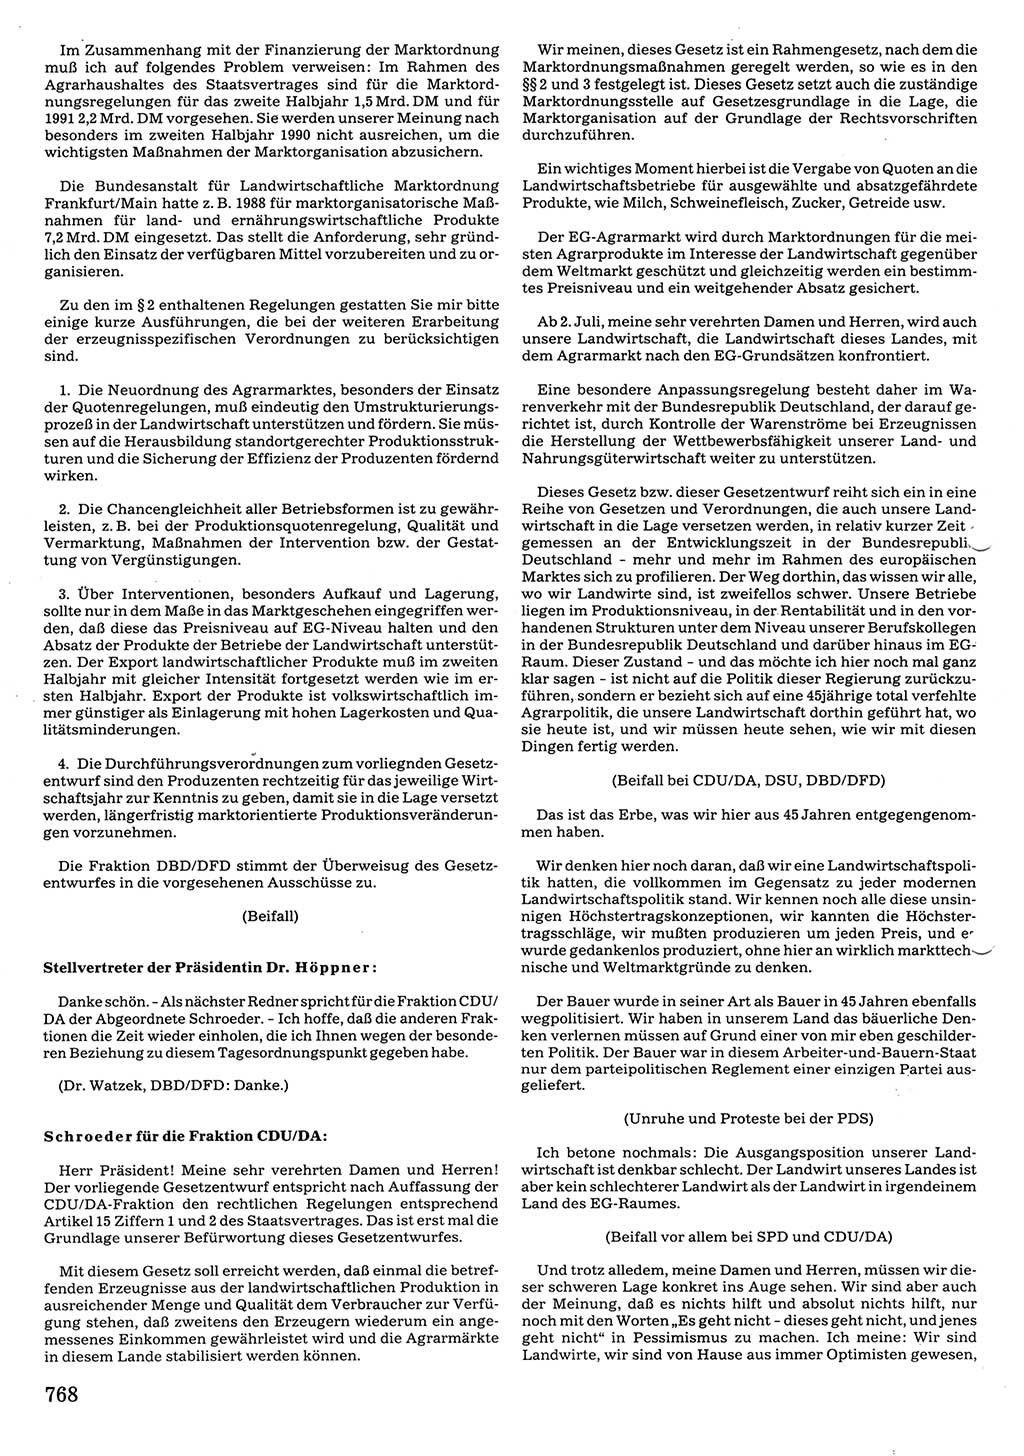 Tagungen der Volkskammer (VK) der Deutschen Demokratischen Republik (DDR), 10. Wahlperiode 1990, Seite 768 (VK. DDR 10. WP. 1990, Prot. Tg. 1-38, 5.4.-2.10.1990, S. 768)